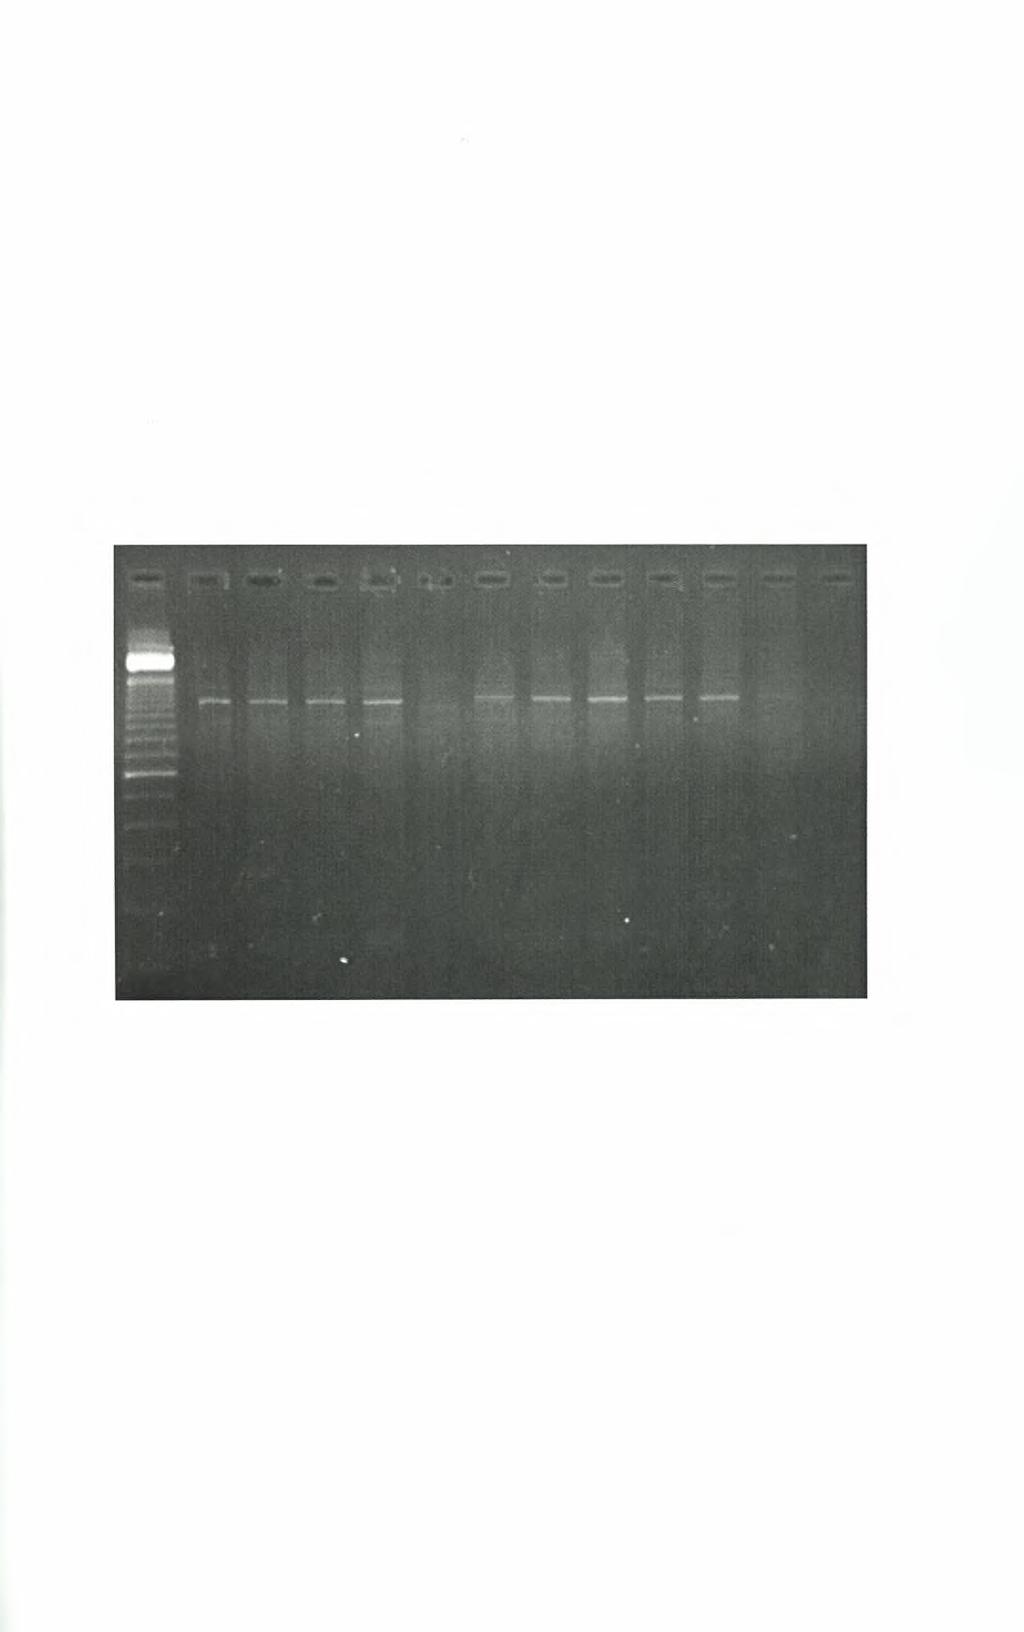 7. Αποτελέσματα 7.1 Αποτελέσματα PCR β-γλοβουλίνης. Στην εικόνα 7.1 παρουσιάζονται τα αποτελέσματα της PCR για την ενίσχυση του γονιδίου της β-γλοβουλίνης εννέα κλινικών δειγμάτων.